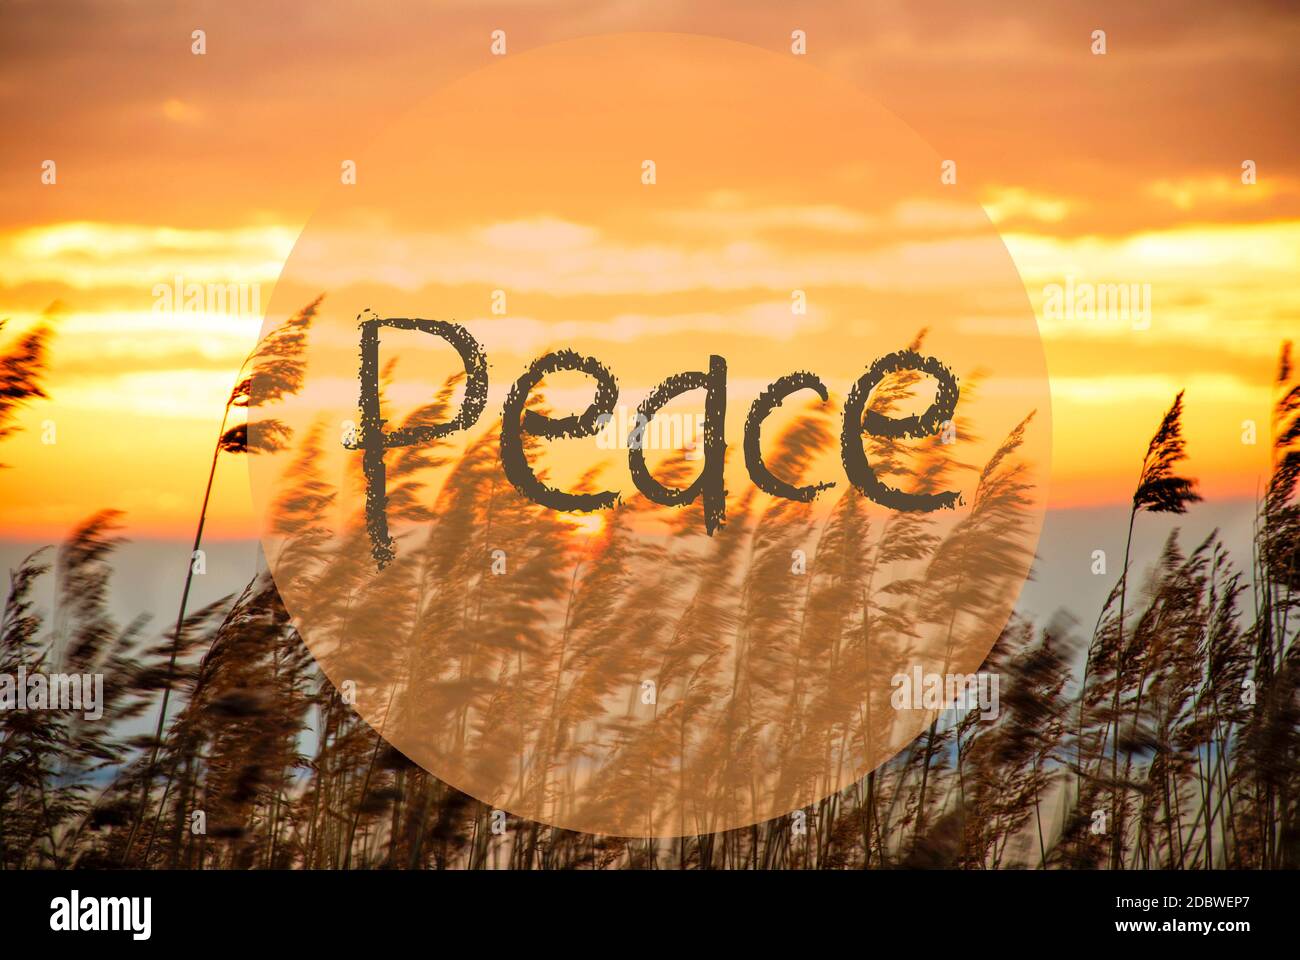 Englischer Text Frieden. Strandgras Bei Sonnenaufgang Oder Sonnenuntergang Im Hintergrund Stockfoto